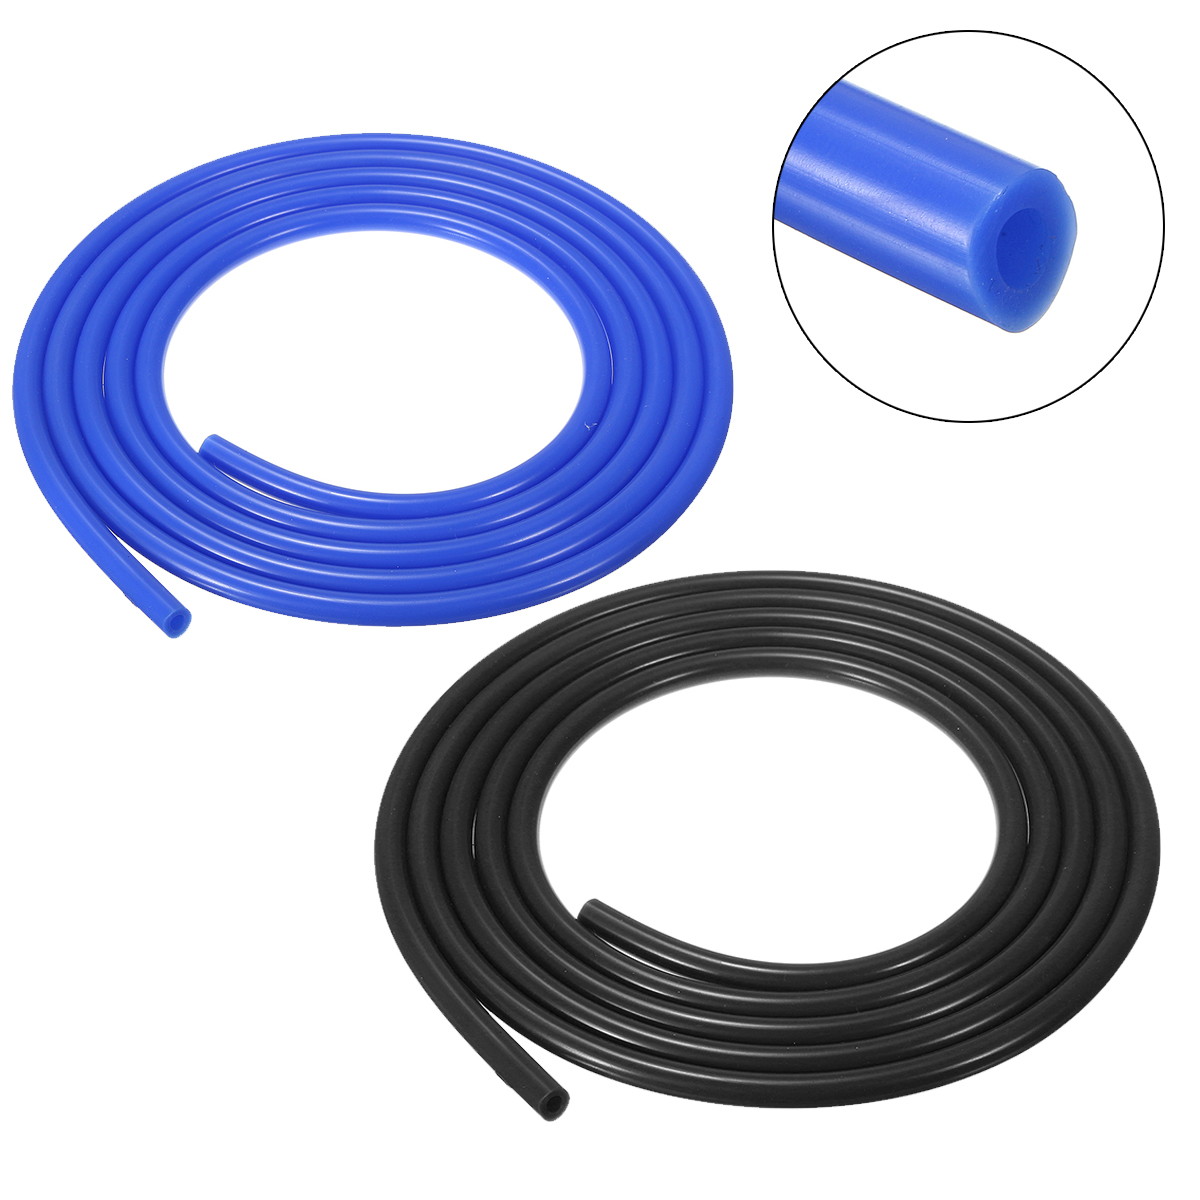 

5 Meter 5 мм силиконовый вакуумный шланг Труба НКТ линия труб 16.4 футов кабель синий черный